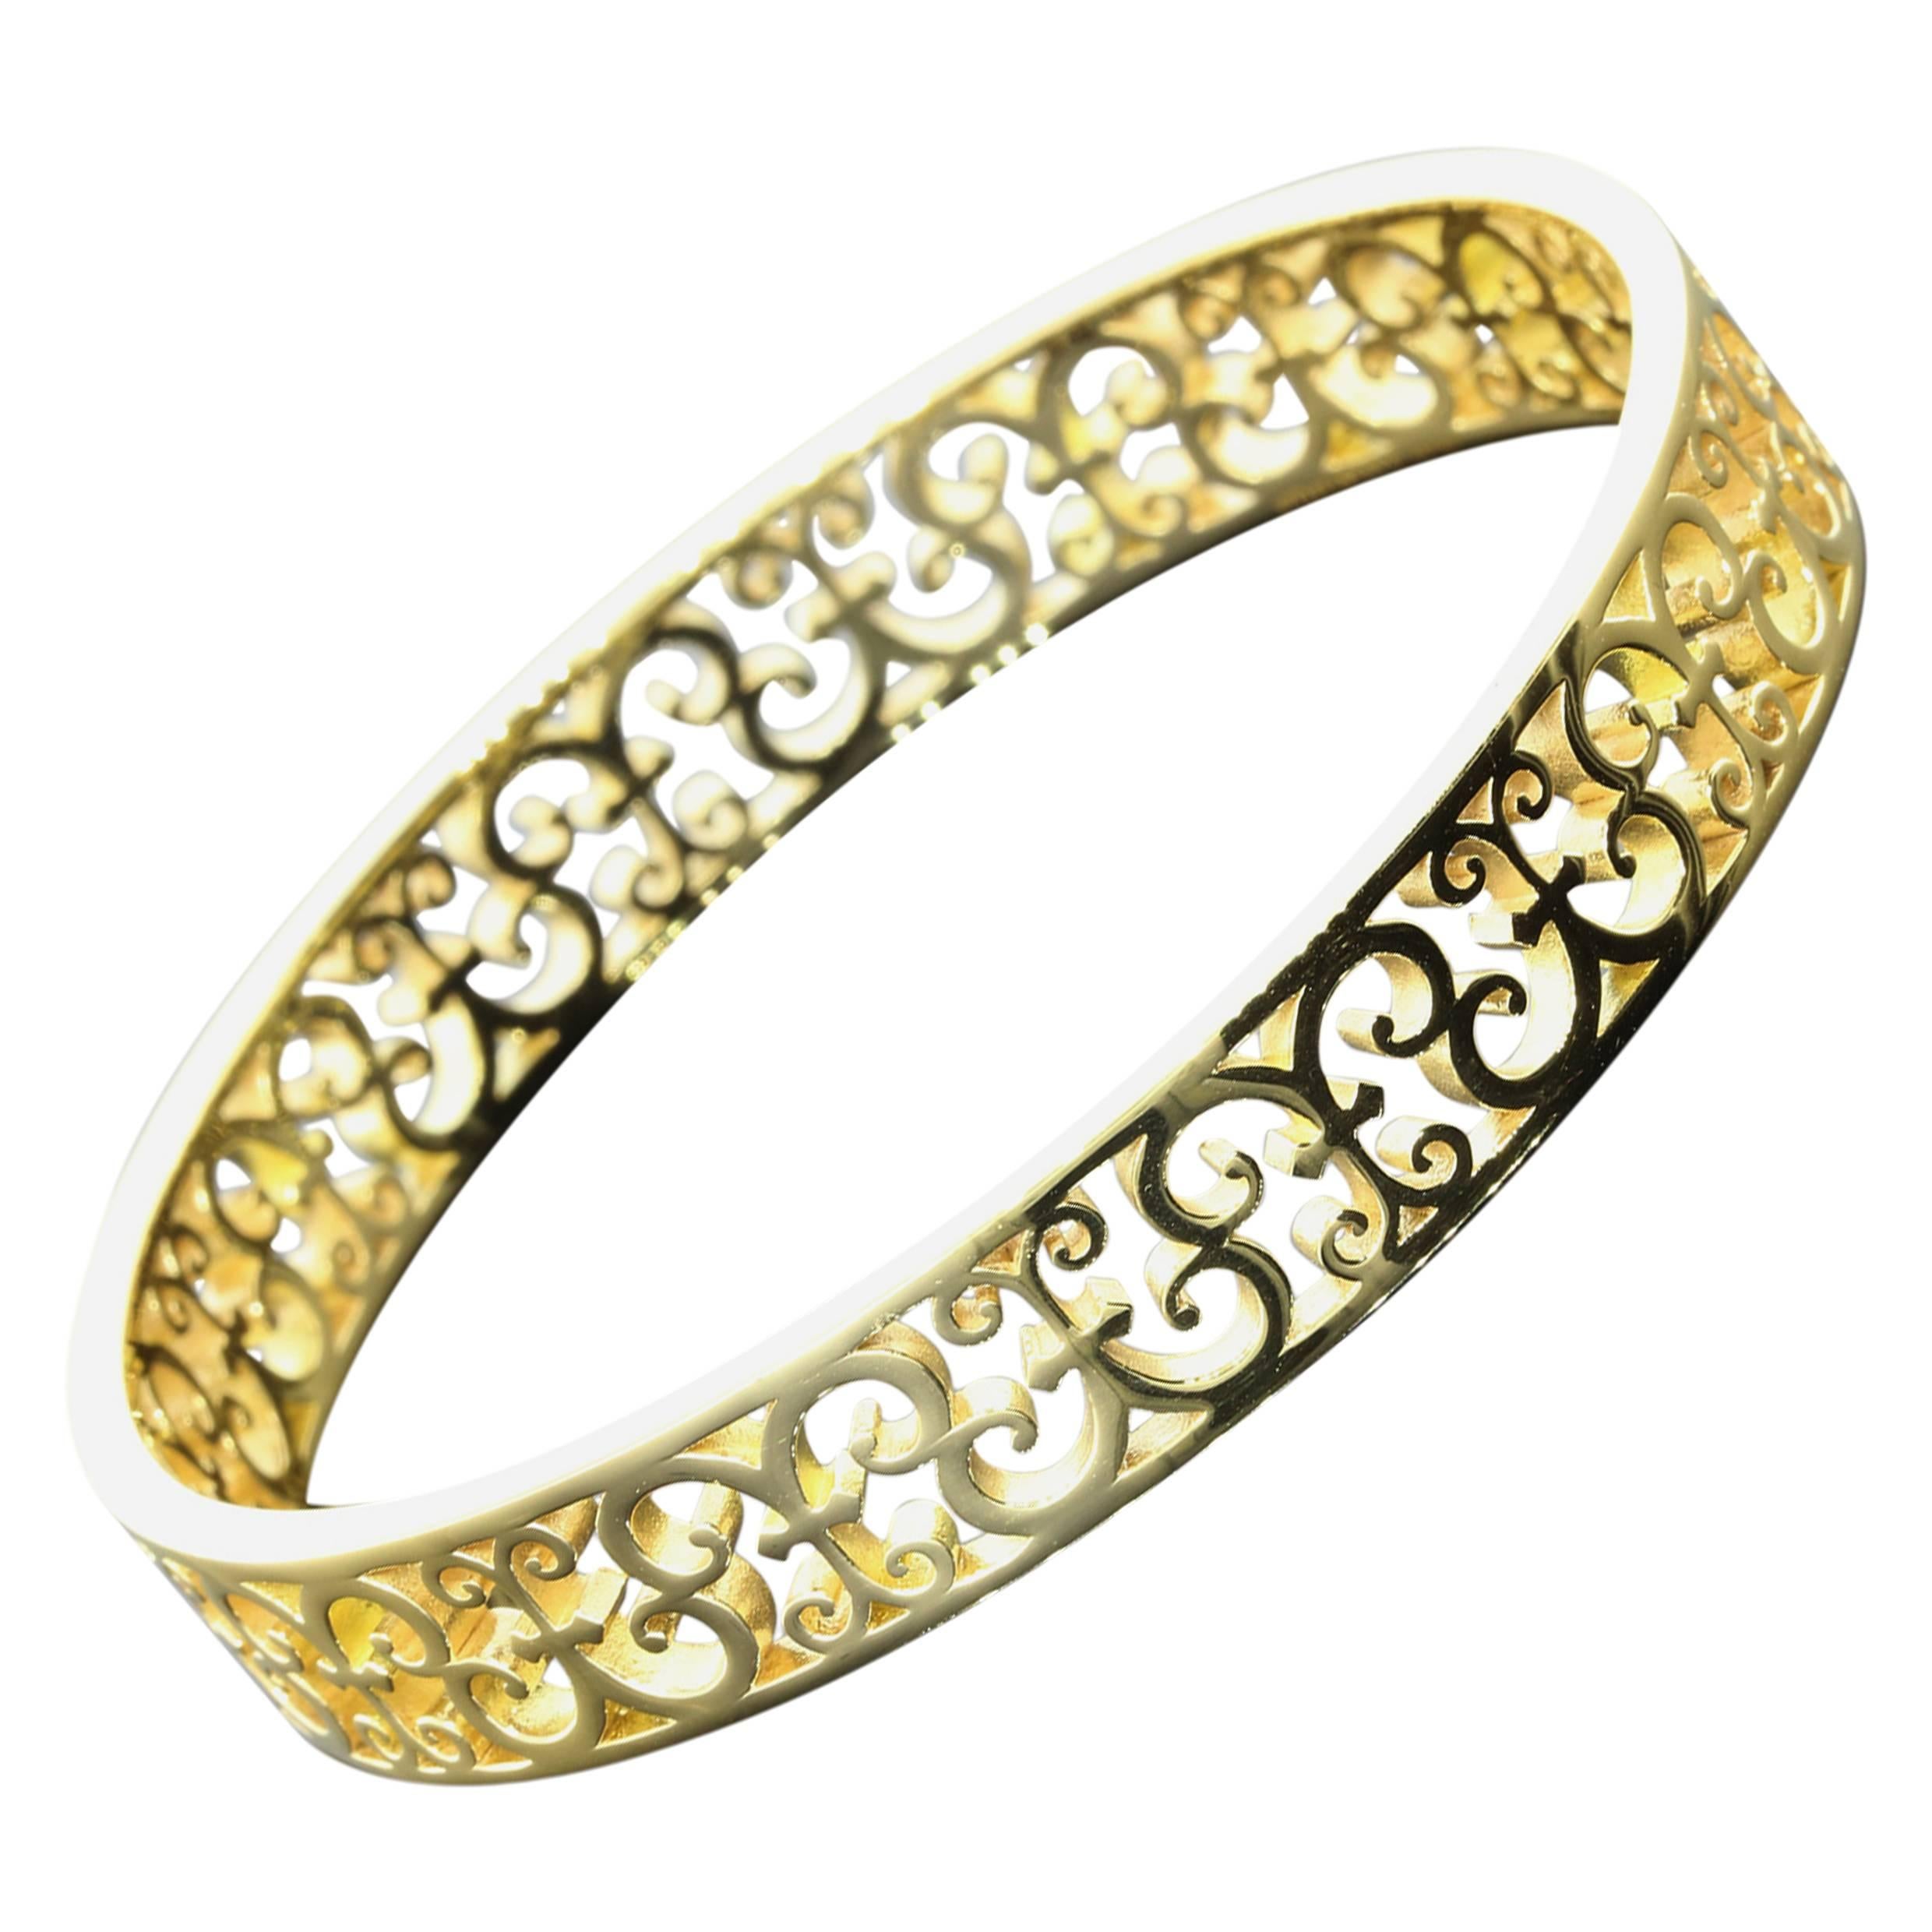 Tiffany & Co. Enchant gold Bangle bracelet